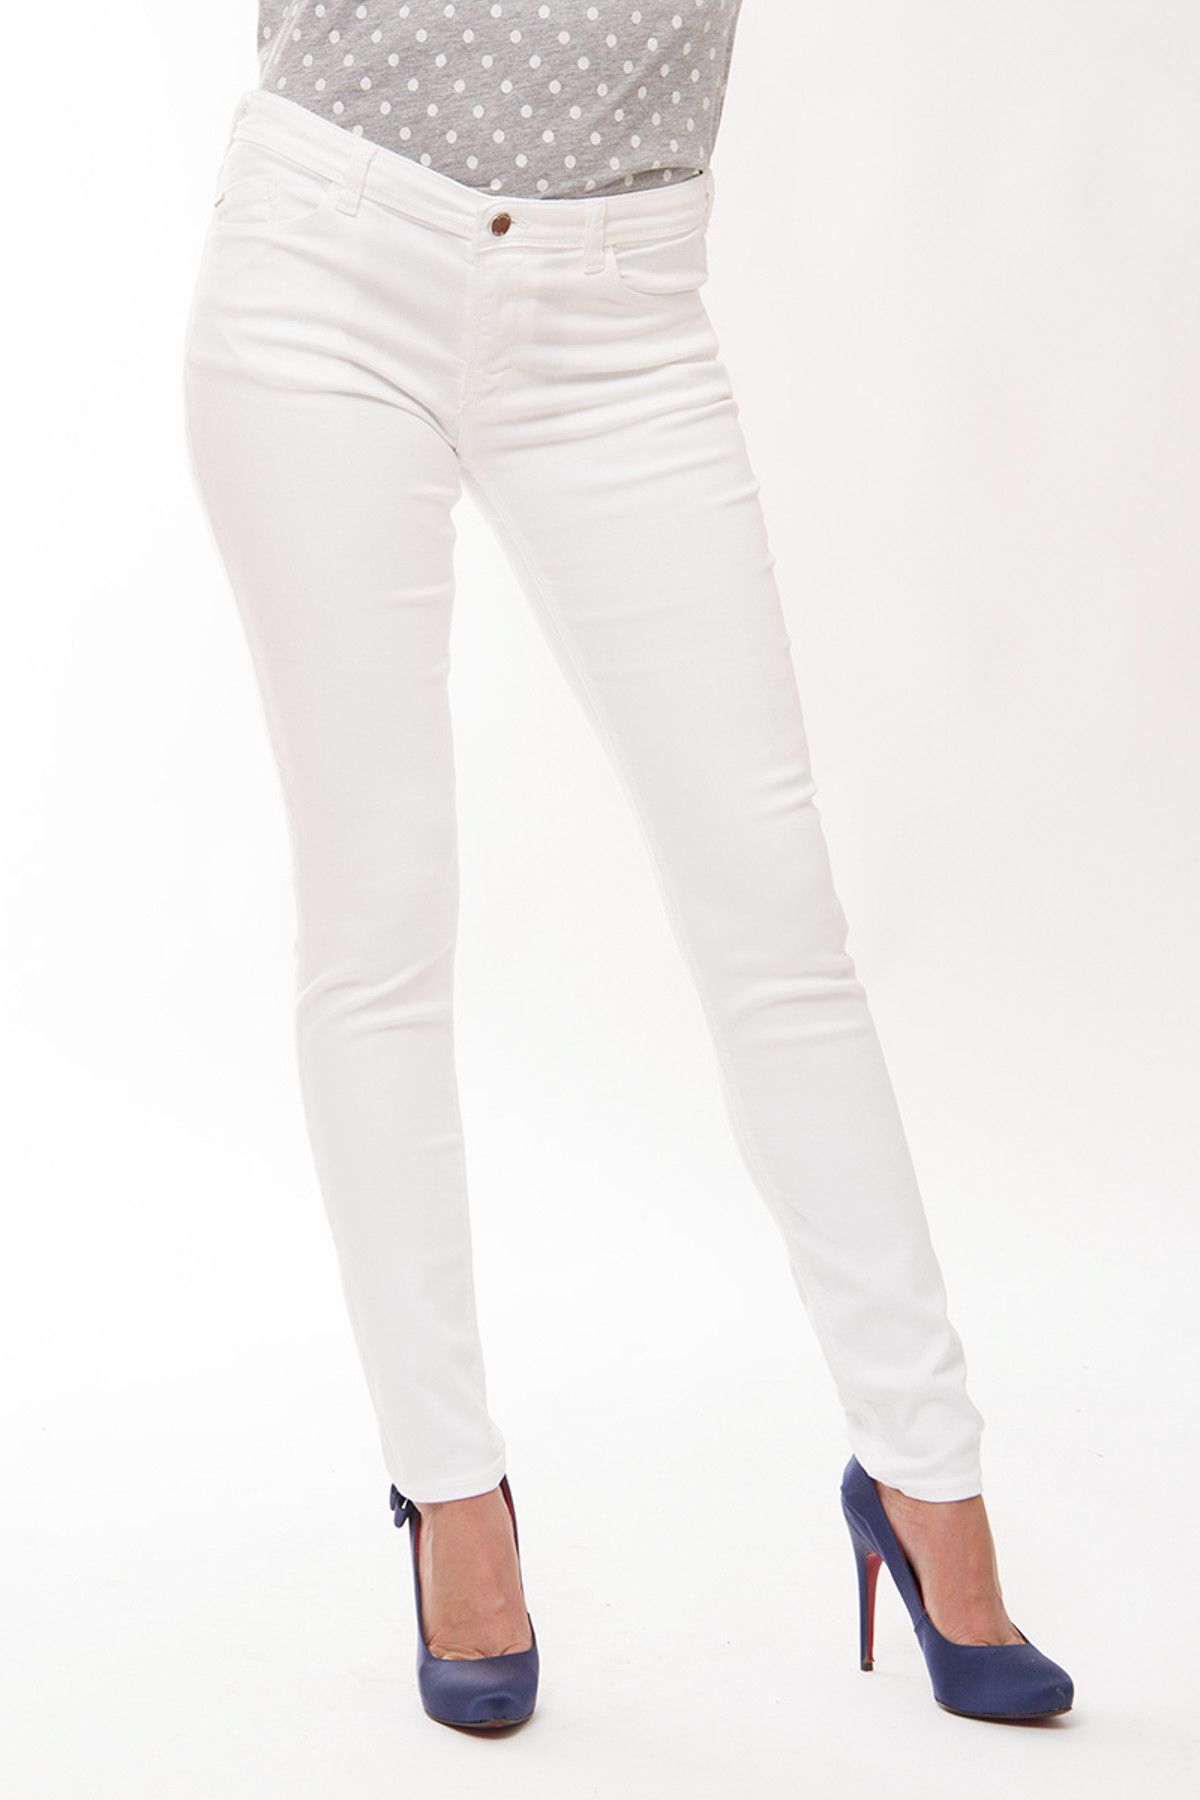 Armani Jeans Beyaz Kadın Jean Ajw01